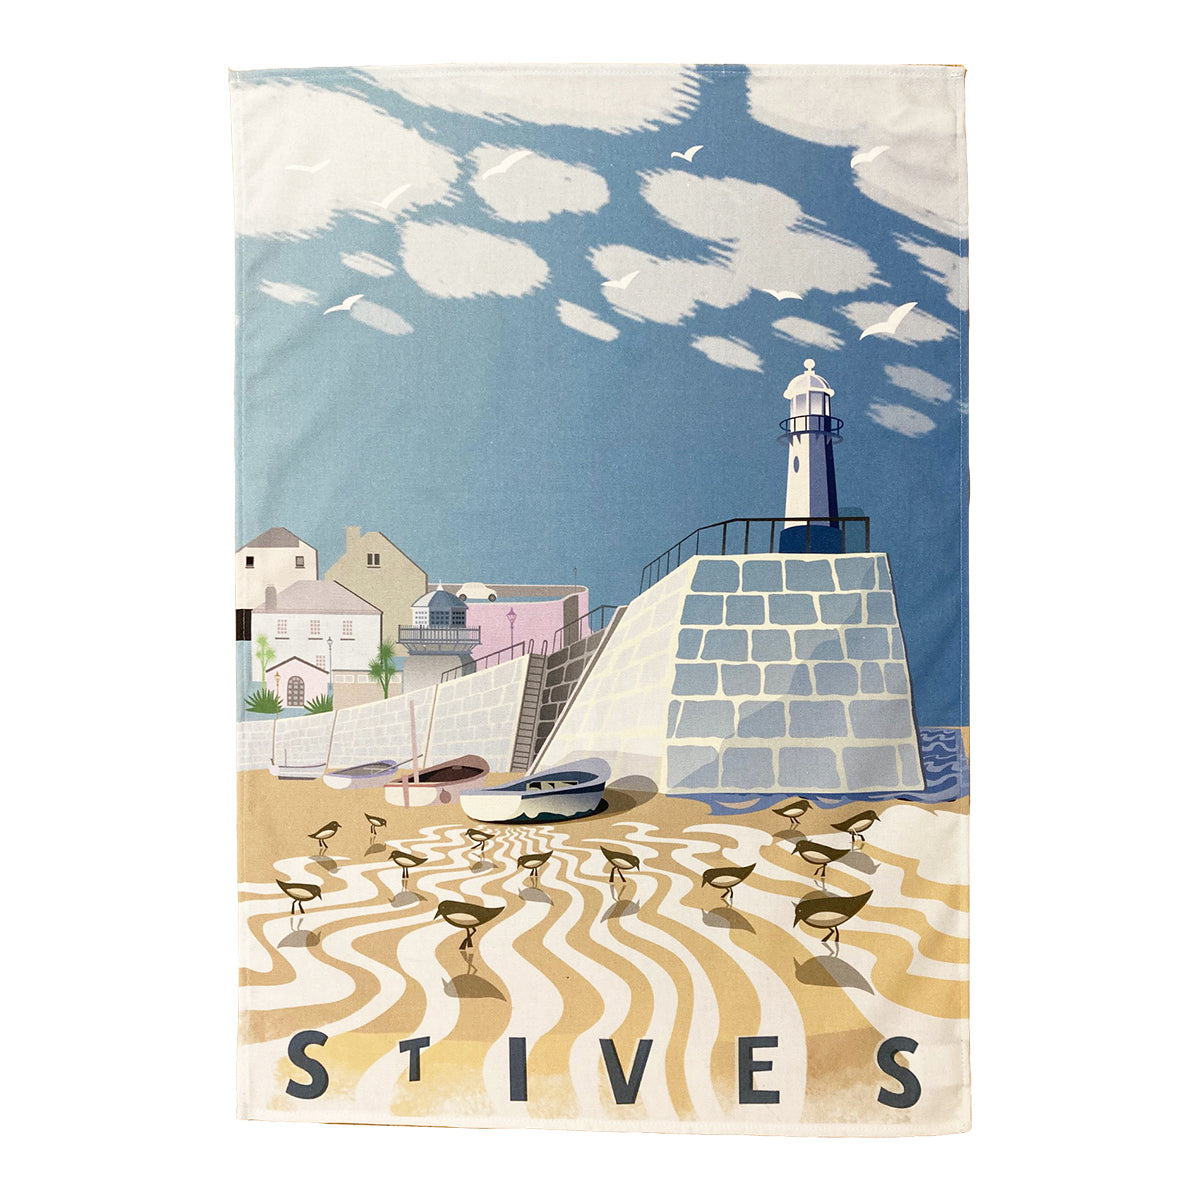 St Ives Tea Towel